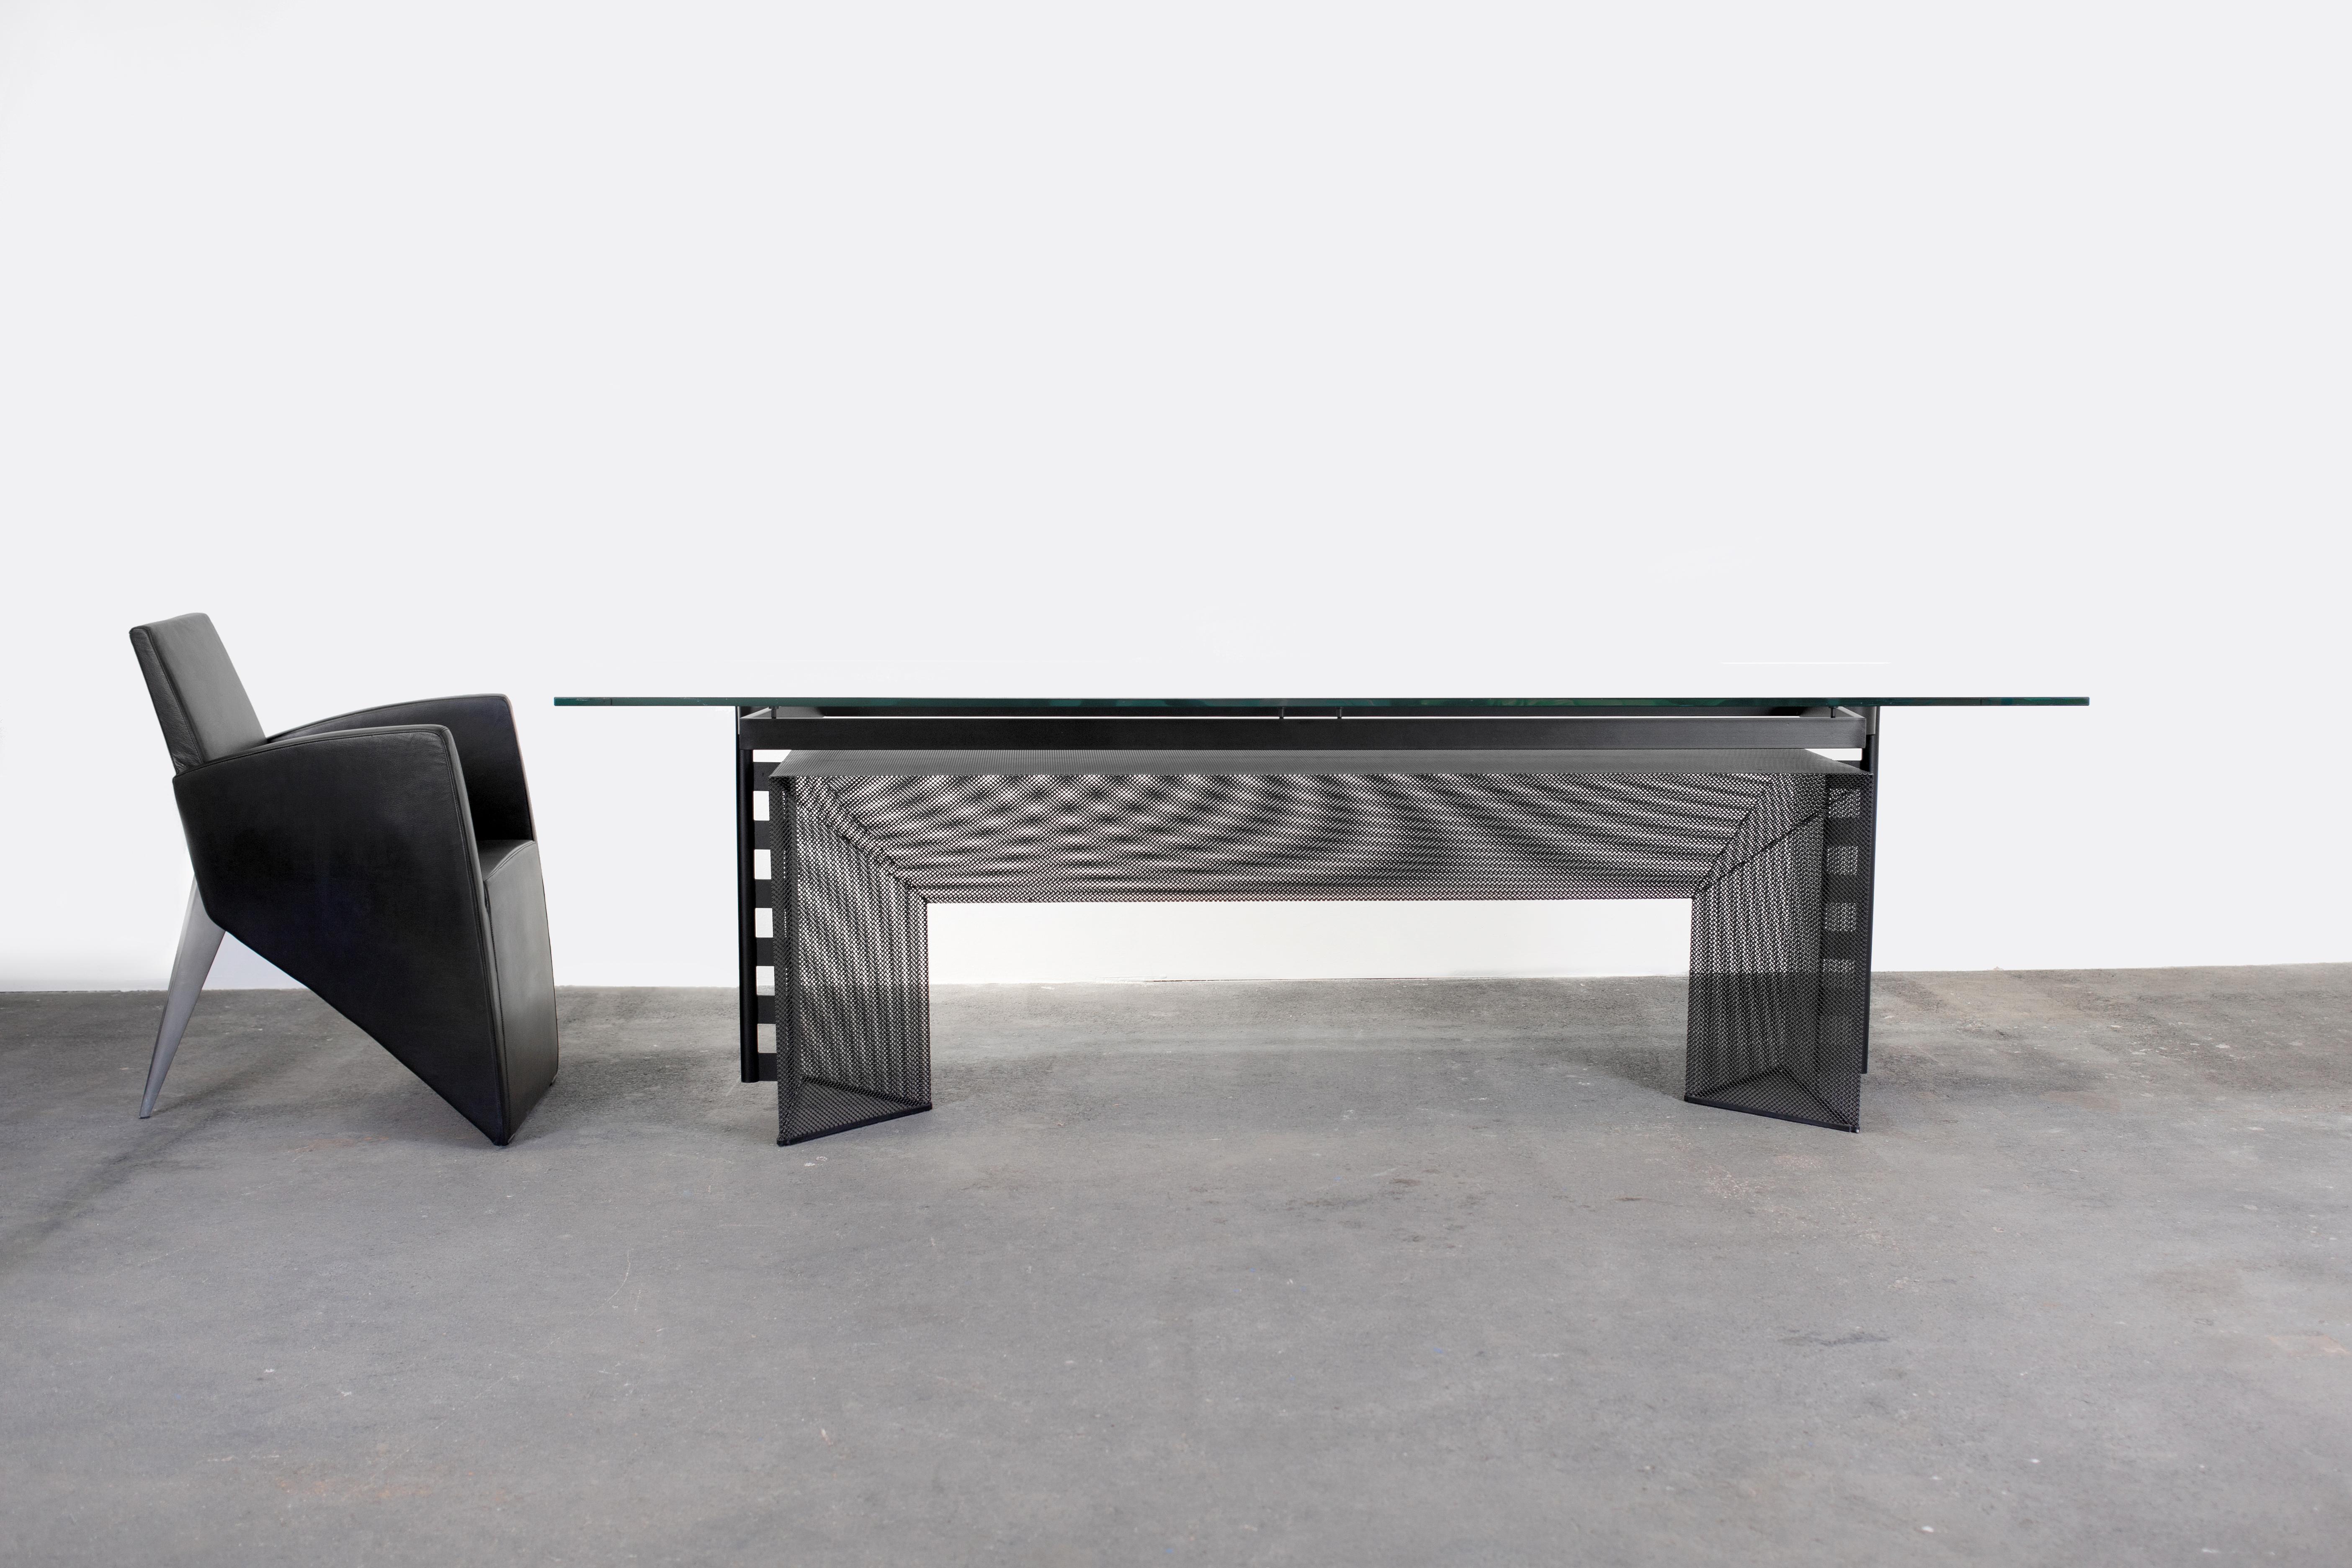 Der Schweizer Architekt Mario Botta entwarf einen postmodernen Esstisch oder Konferenztisch aus Glas und Metall mit prismatischen Elementen. 

Entworfen 1986 und hergestellt von Alias in Norditalien.

Große Glasplatten scheinen über einem